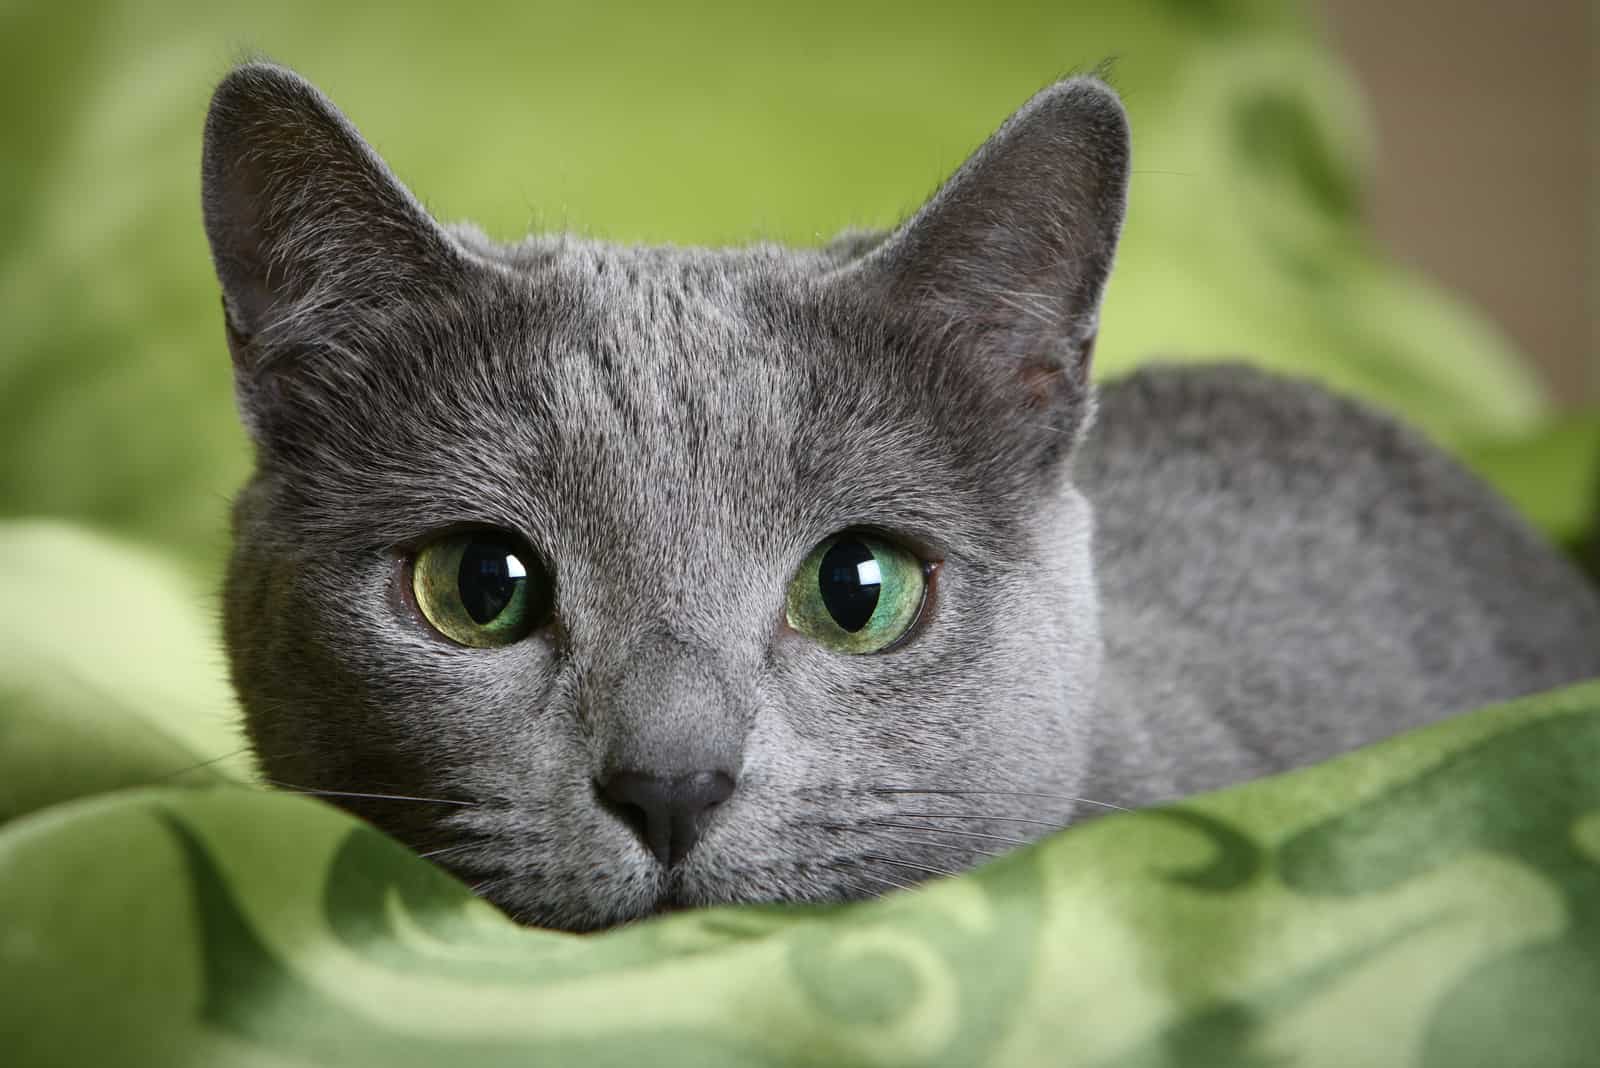 Russian Blue Cat lying on green blanket